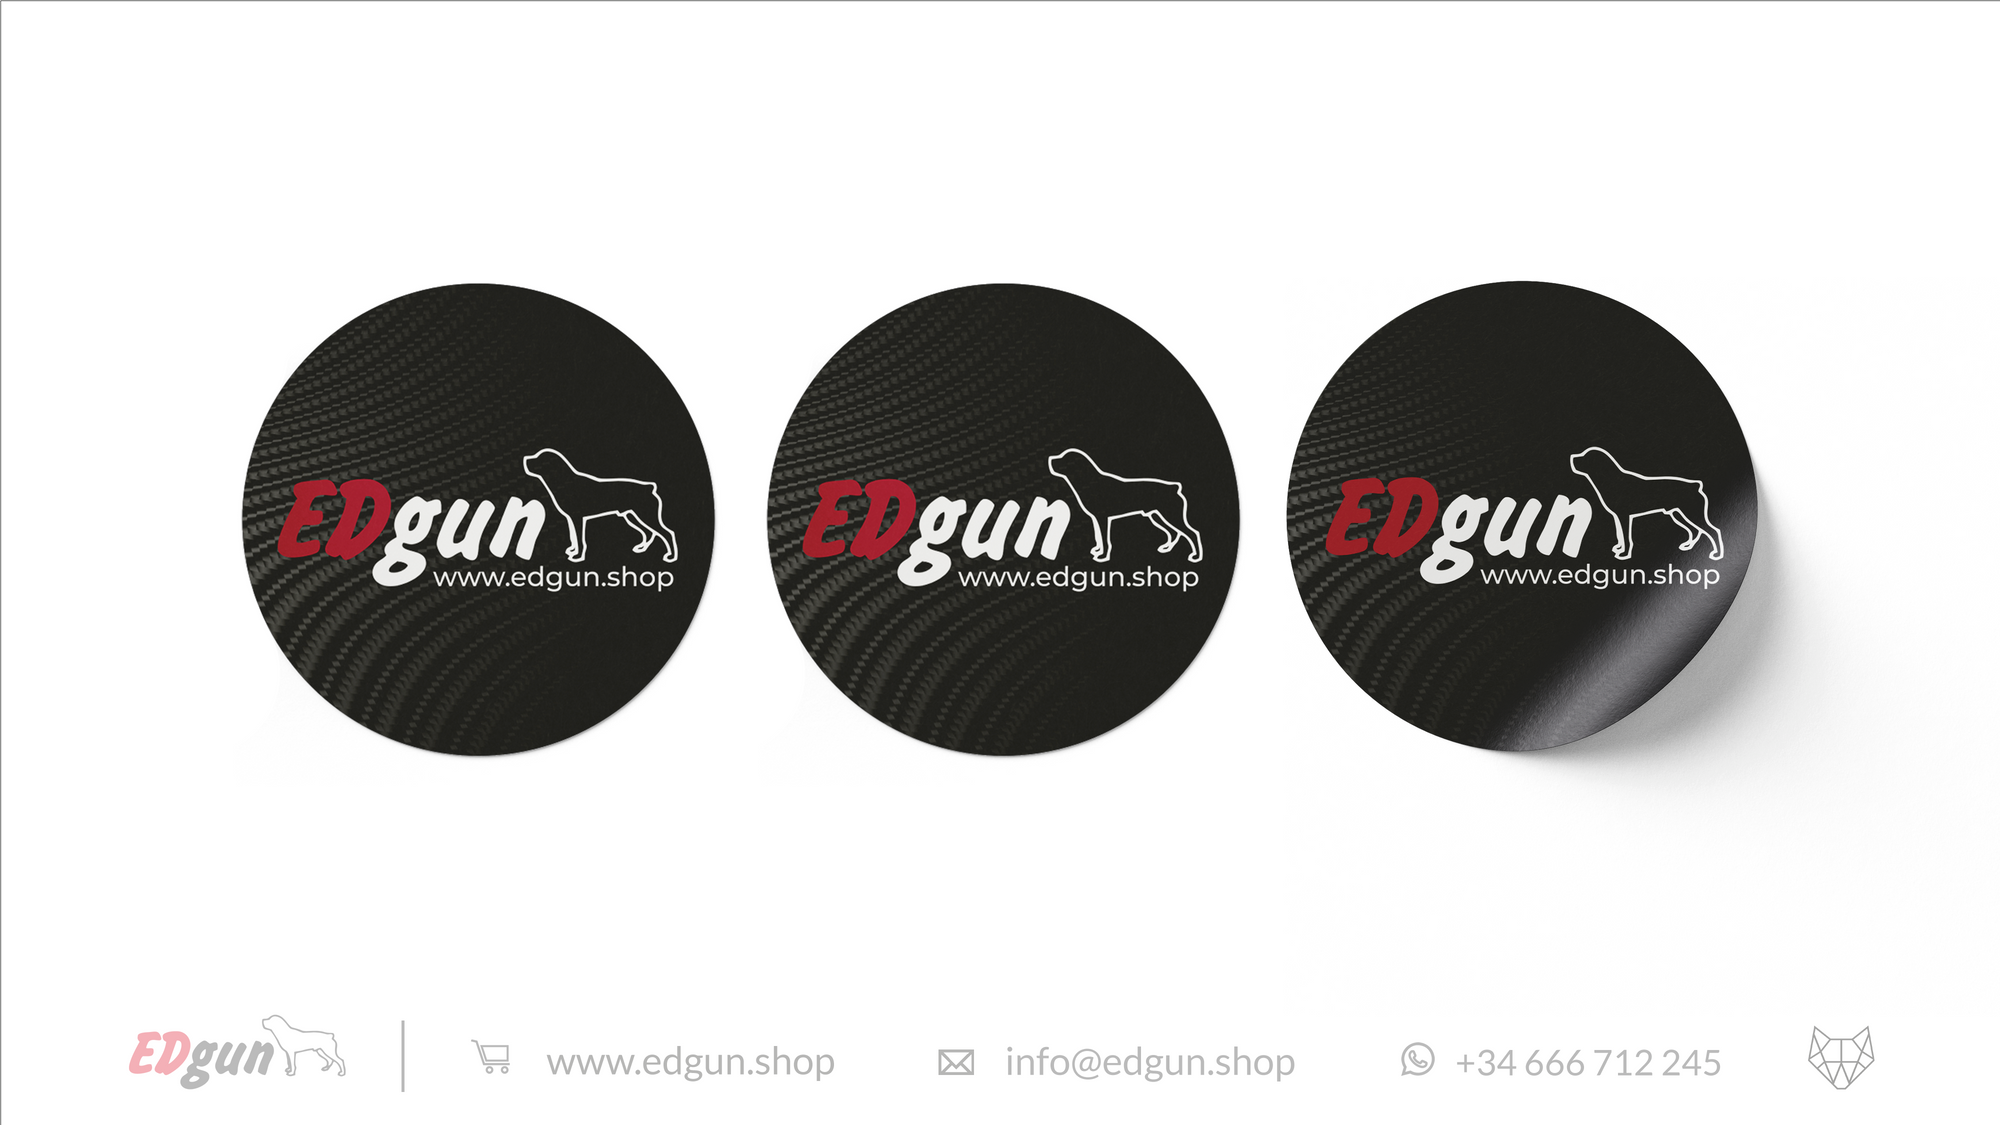 3 stickers with Edgun logo